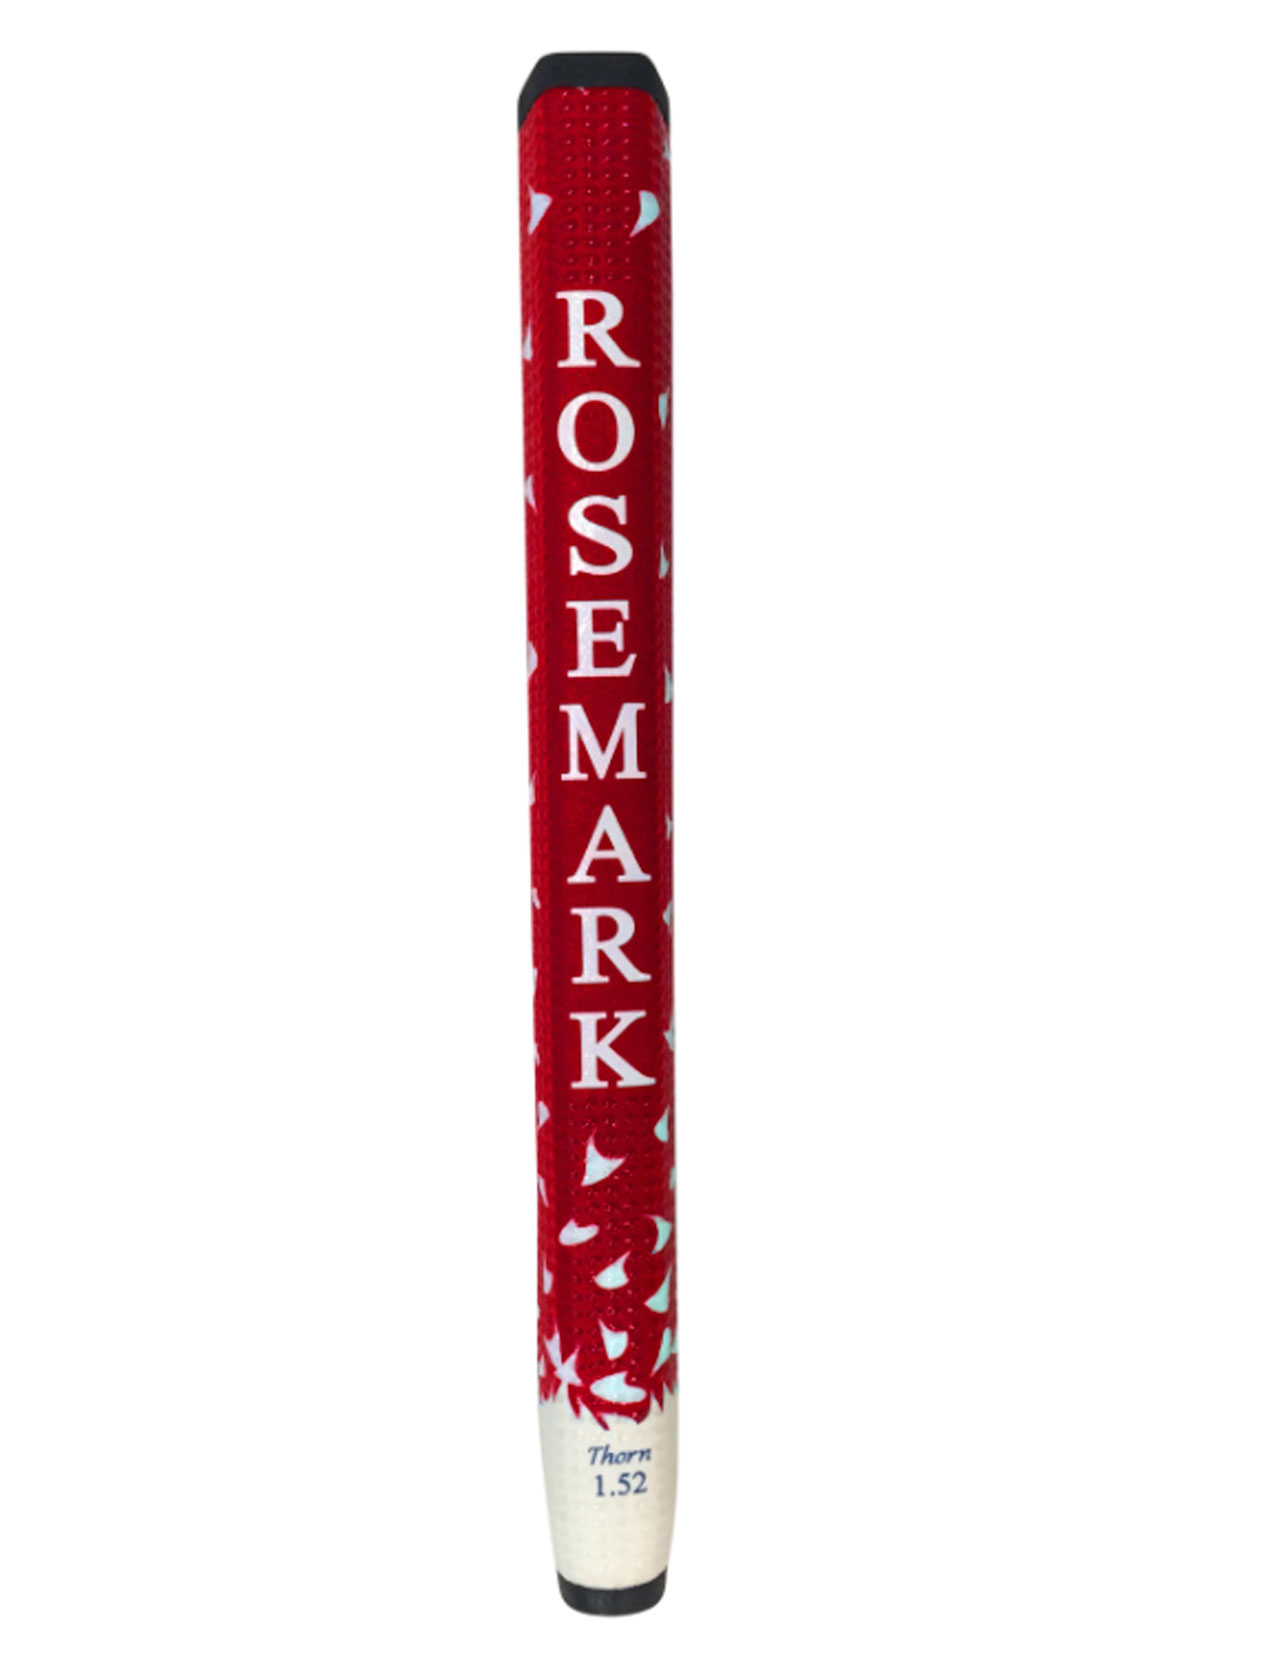 Rosemark 1.52 Red / White